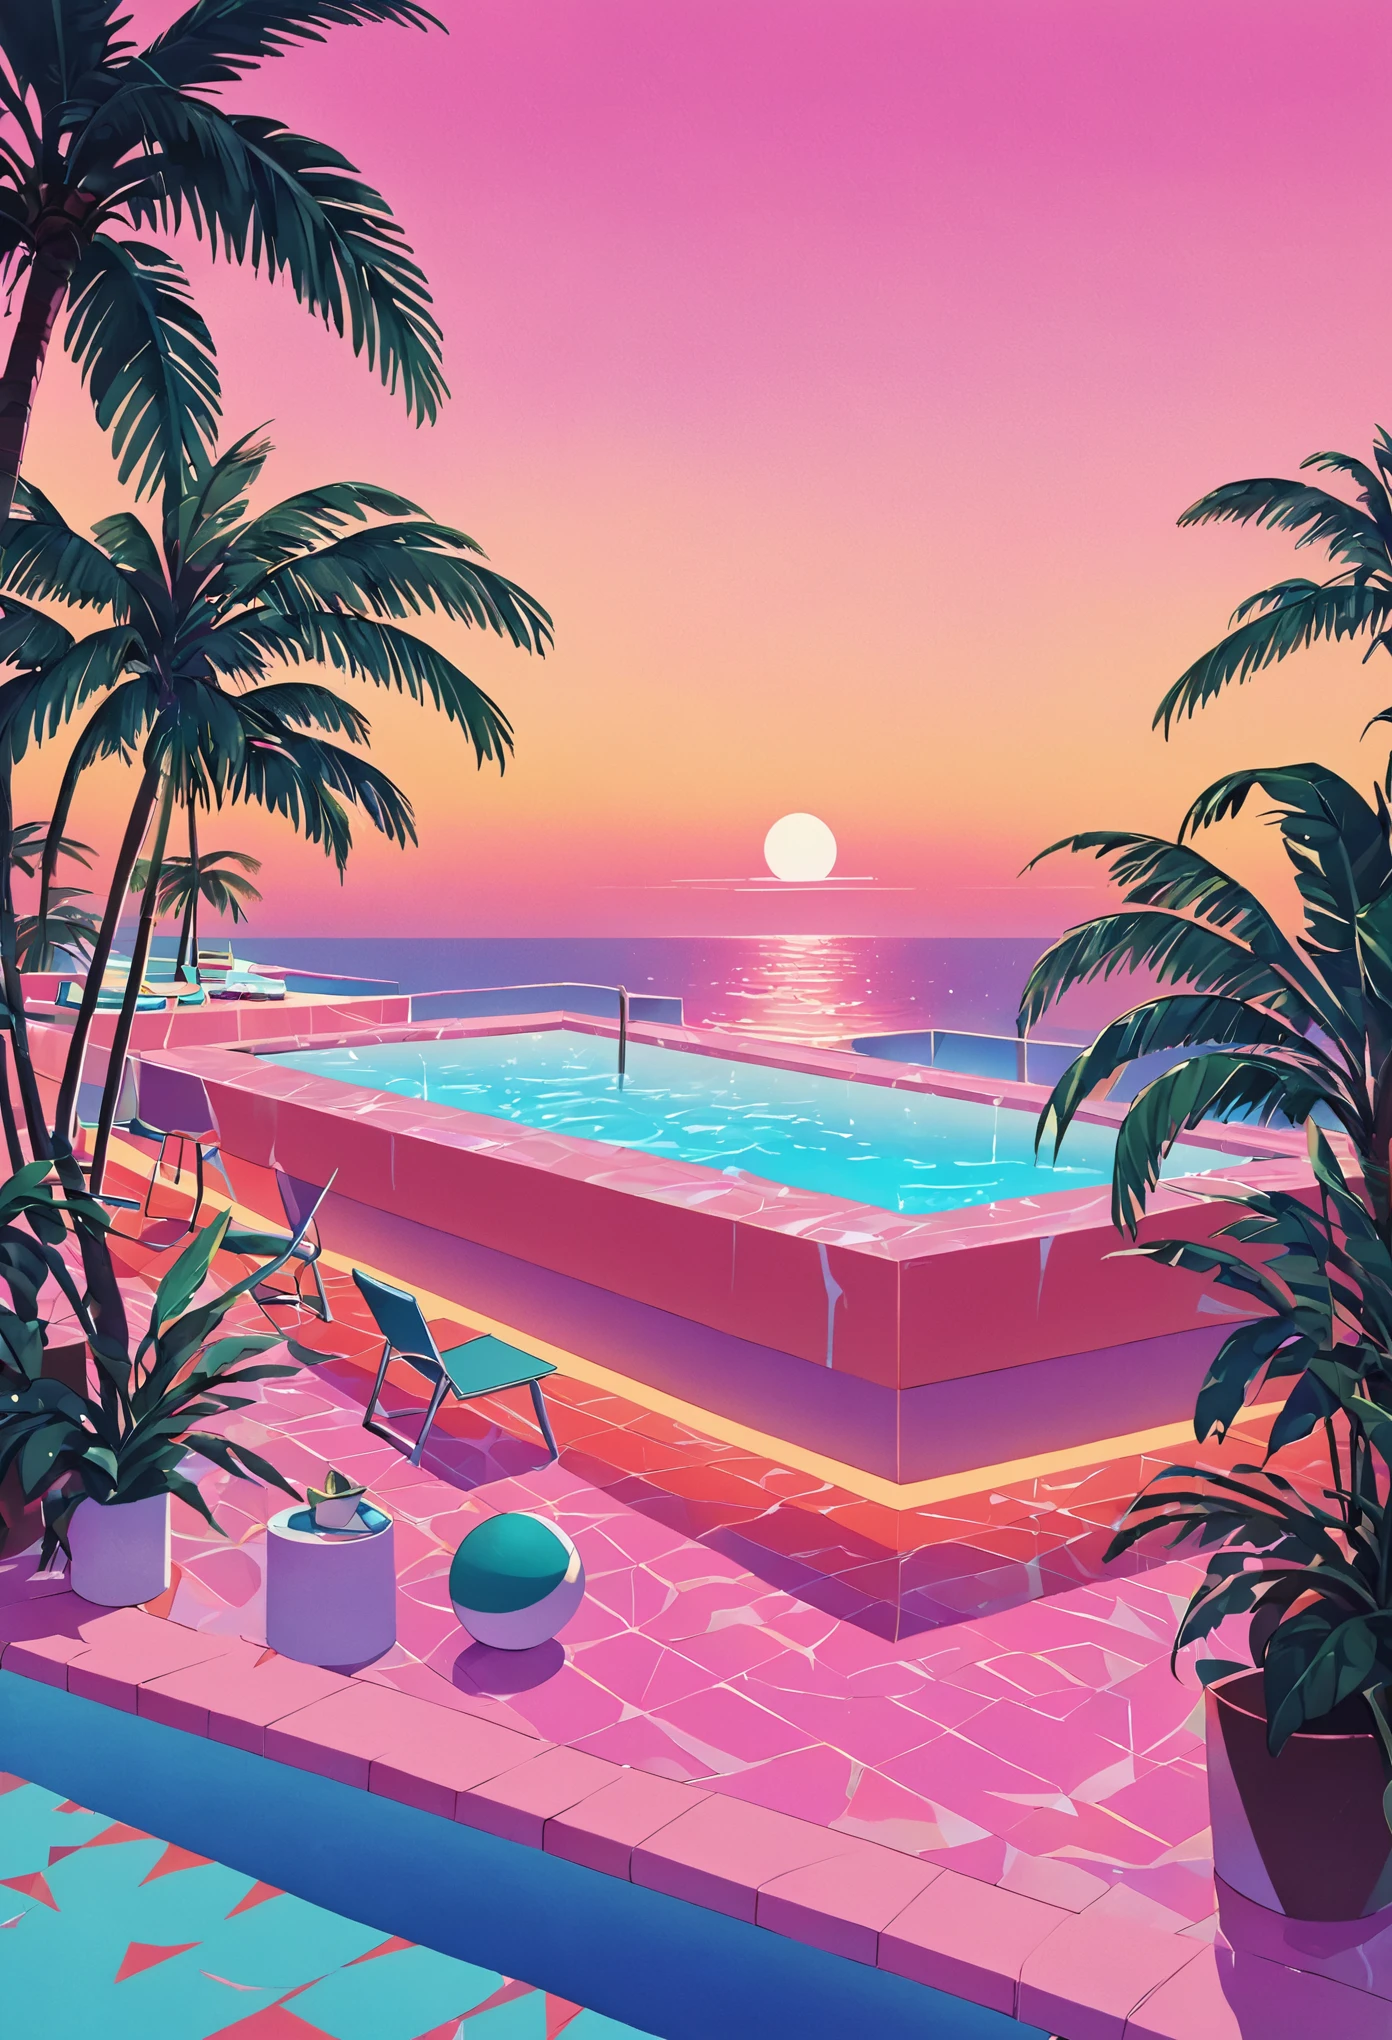 Stellen Sie sich ein Kunstwerk vor, das tief in der Vaporwave-Ästhetik der 80er Jahre versunken ist, inspiriert vom dynamischen Stil von Yoko Honda. Stellen Sie sich eine retro-futuristische Pool- und Strandszene bei Sonnenuntergang vor, wo der Himmel in den warmen Farben eines Sommersonnenuntergangs der 80er Jahre leuchtet – intensive Orangetöne, Rosa, und Rottöne, die sich im ruhigen Meer und Poolwasser spiegeln. Rund um den Pool, Neonbeleuchtete Palmen und Kokospalmen wiegen sich sanft, Verstärkung der tropischen und surrealen Atmosphäre. Neonlichter in geometrischen Mustern erhellen die Szene, wirft einen traumhaften Glanz auf alles. Im Hintergrund ist eine schicke Strandbar zu sehen, deren Inneneinrichtung durch große Glasfenster sichtbar ist., präsentiert einen Raum mit pastellfarbenen Wänden und Böden, die mit luxuriösen Terrazzo- und Marmorstrukturen bedeckt sind. Das Gesamtambiente verbindet nostalgischen Luxus mit lebendiger, warme Farbpaletten, Schaffung einer Szene, die sowohl zeitlos ist als auch deutlich an die 80er Jahre erinnert.